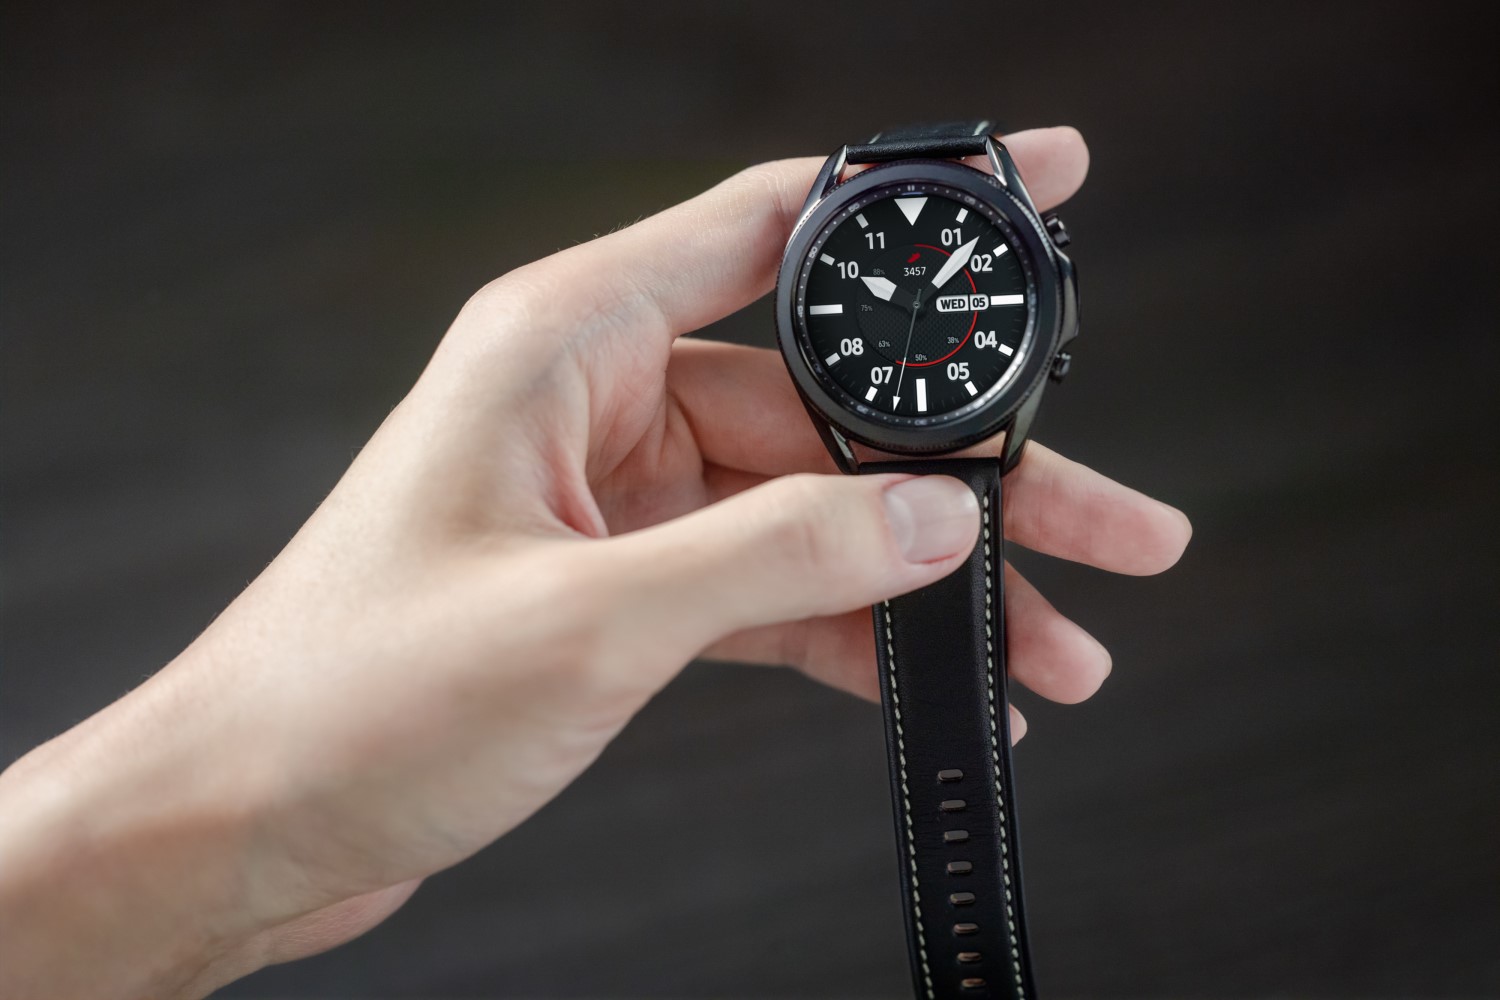 Samsung Galaxy Watch3 trae lujo, confort y más funciones